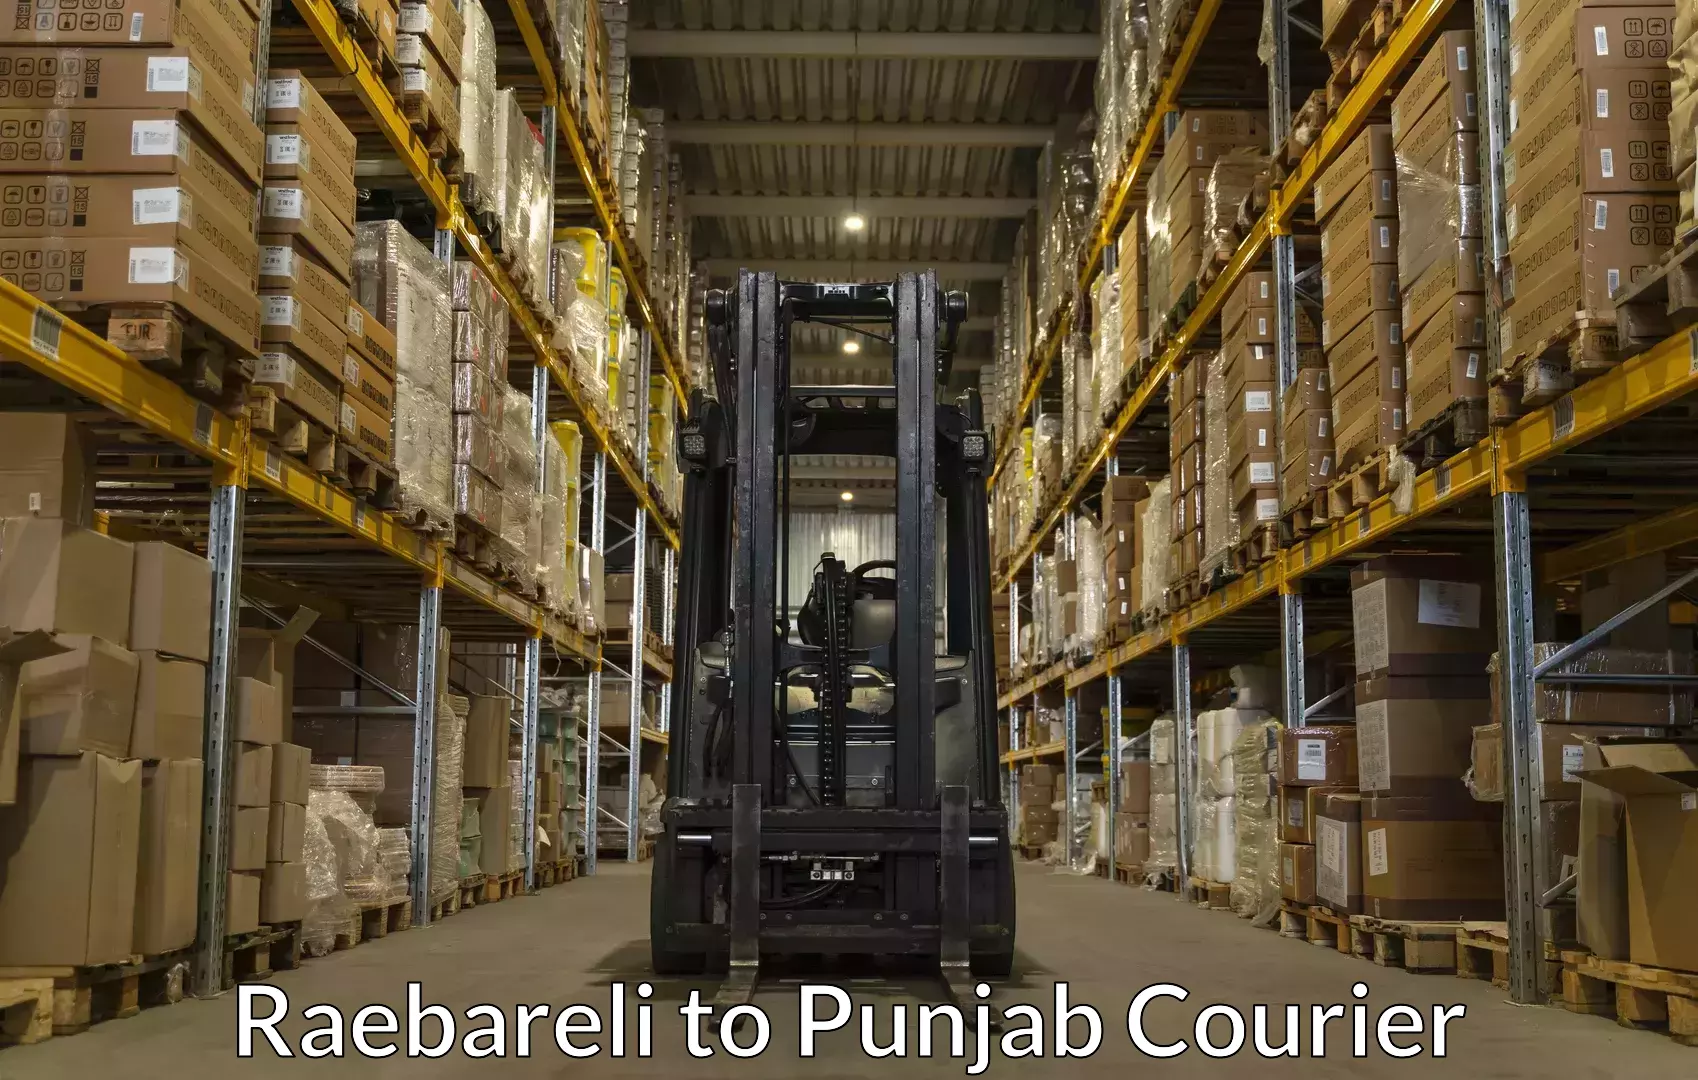 Baggage transport scheduler Raebareli to Punjab